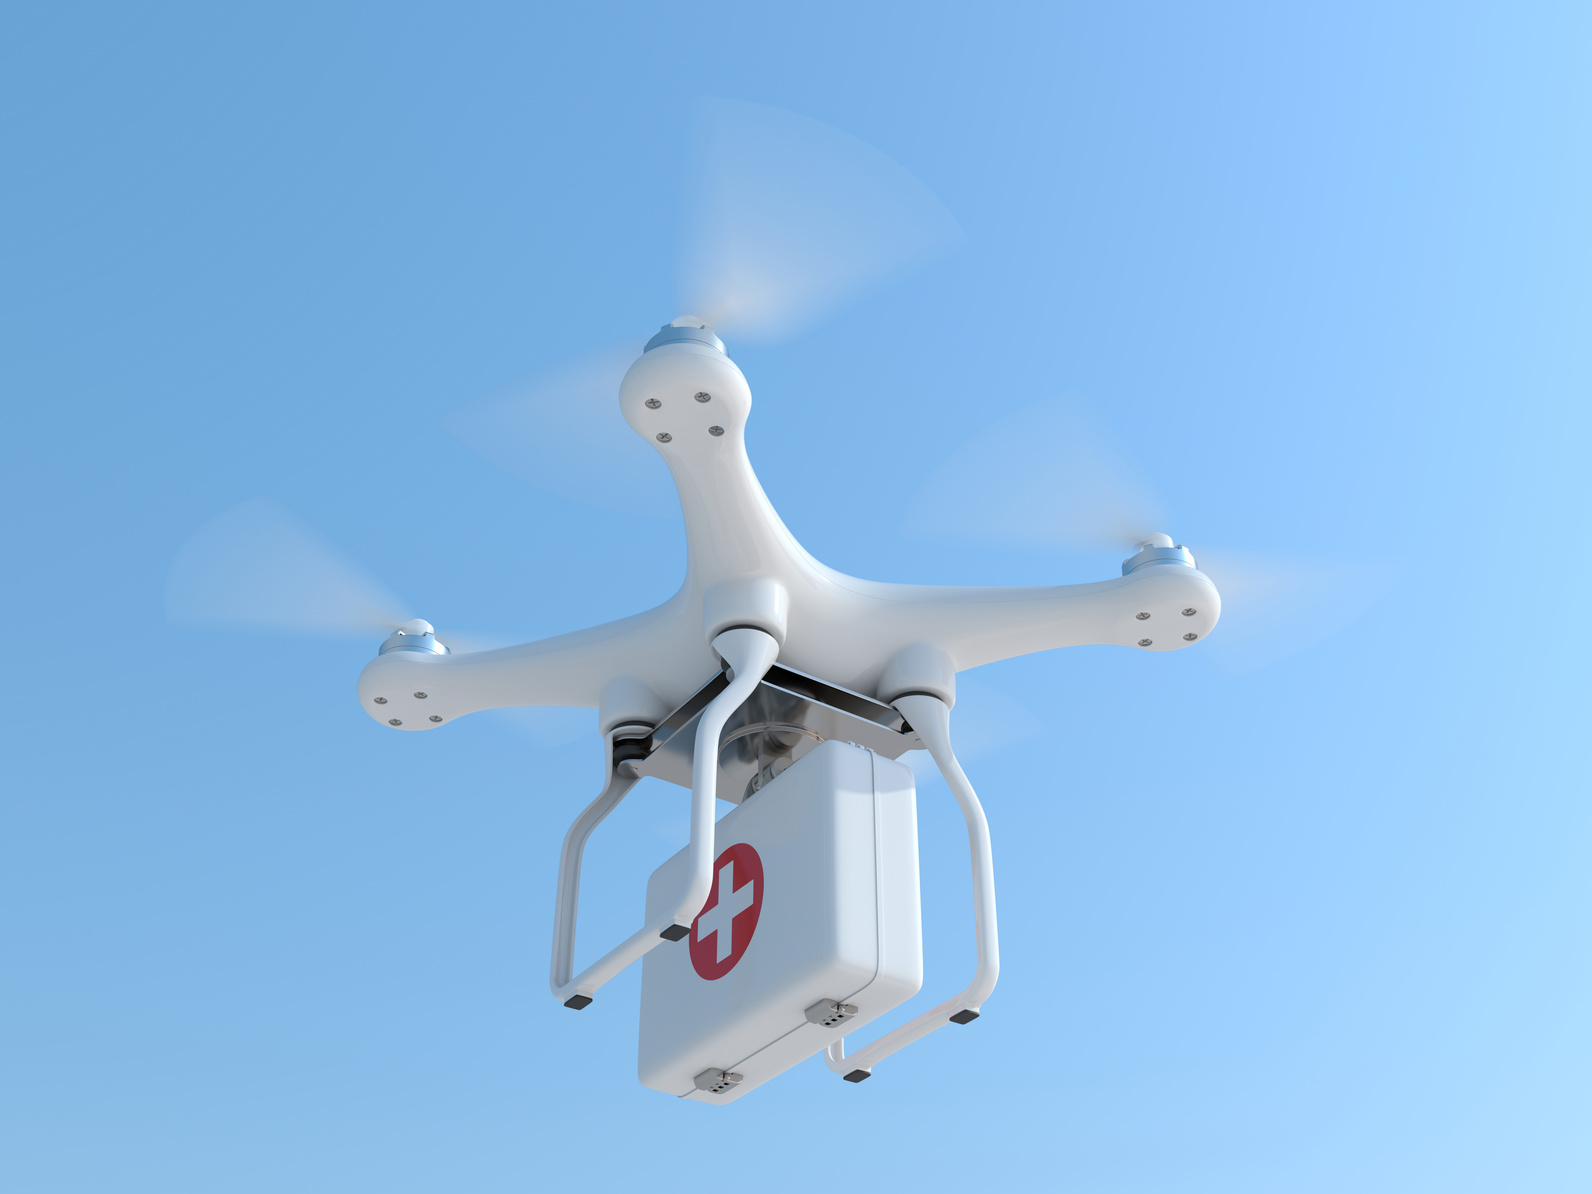 ΄Ενταξη των drones στις υπηρεσίες έκτακτης ανάγκης